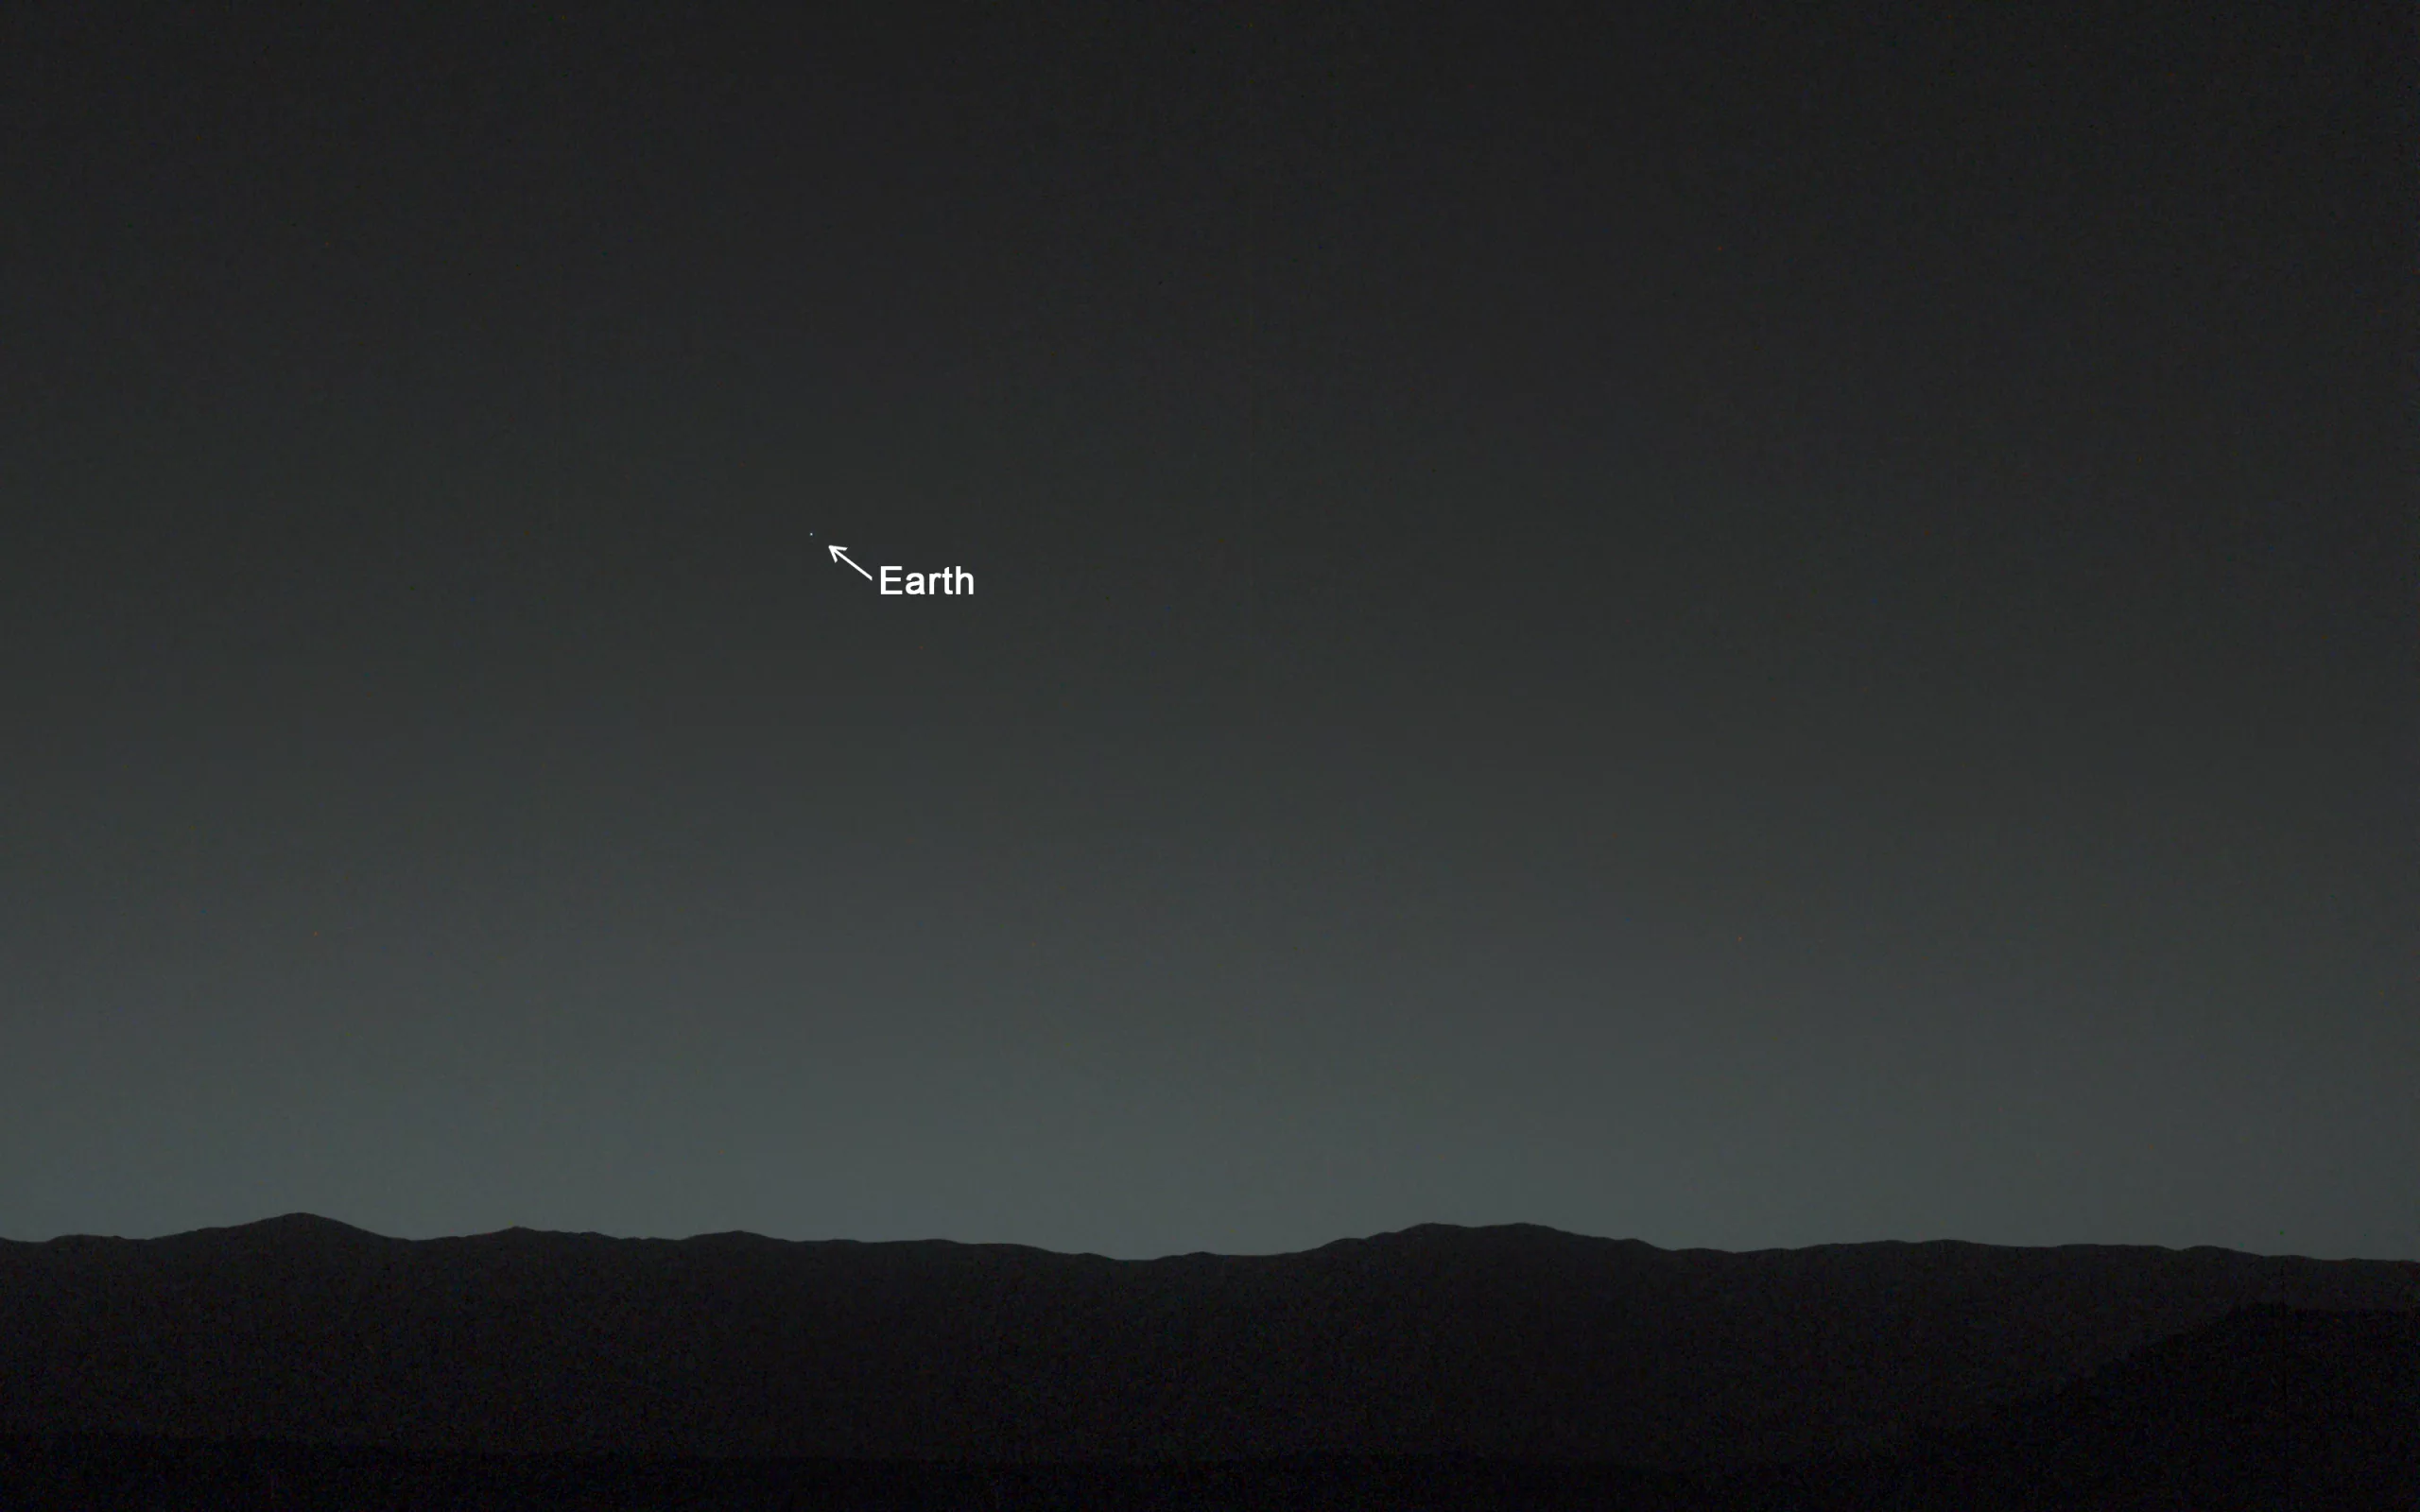 Foto tirada pela sonda  Curiosity. em 31 de janeiro deste ano, mostrando a Terra vista de Marte.